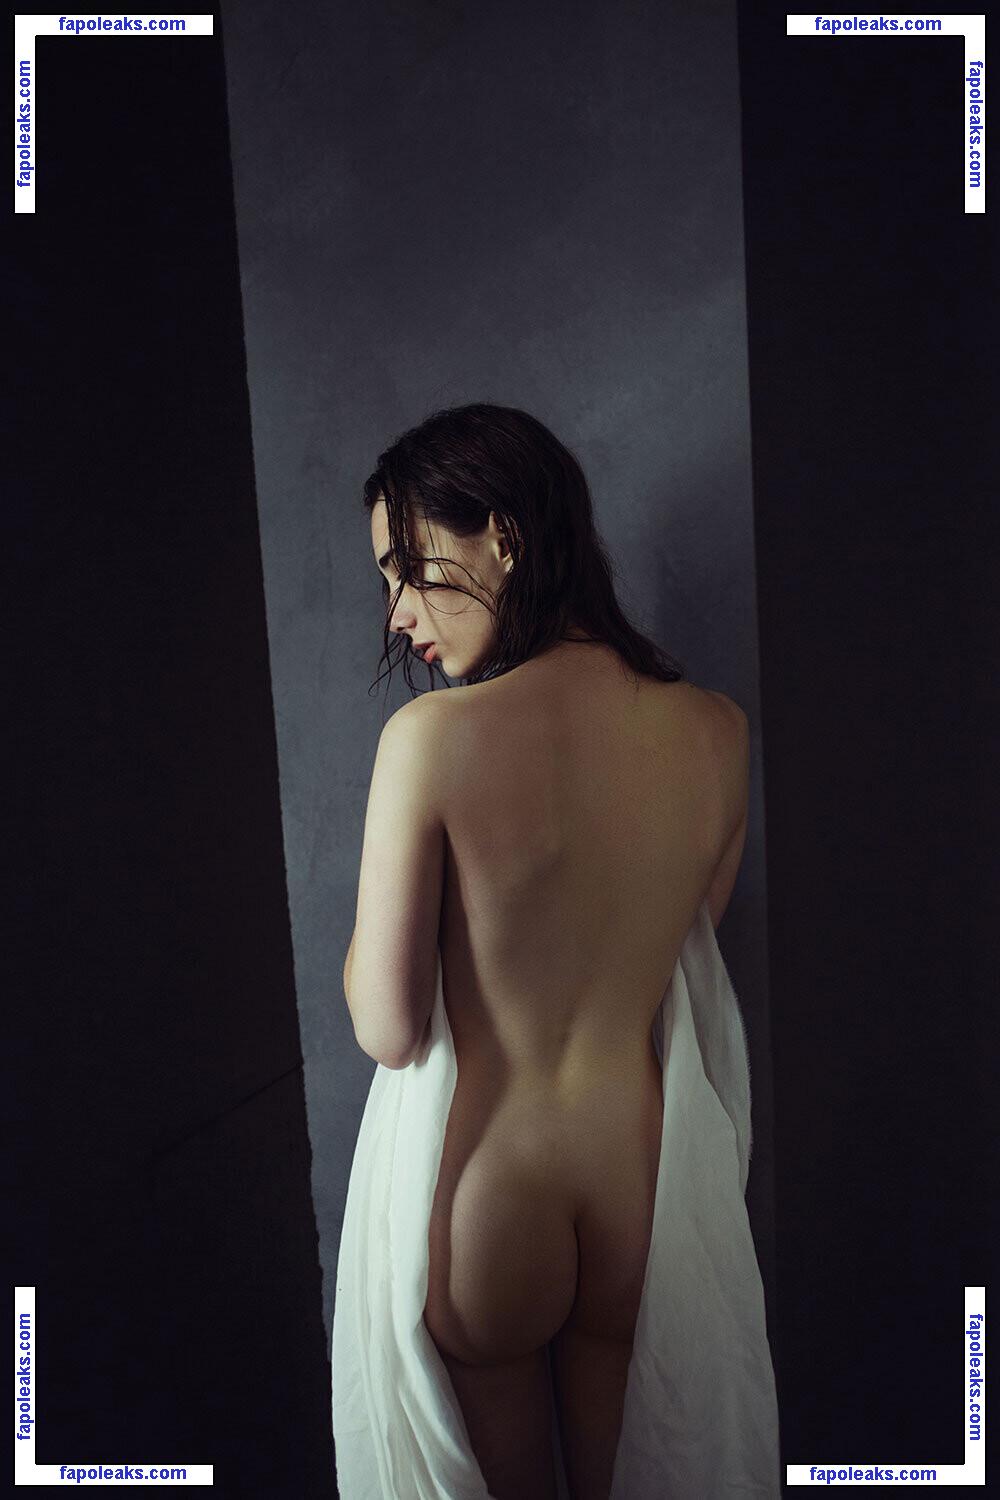 Pauline Korzun nude photo #0012 from OnlyFans